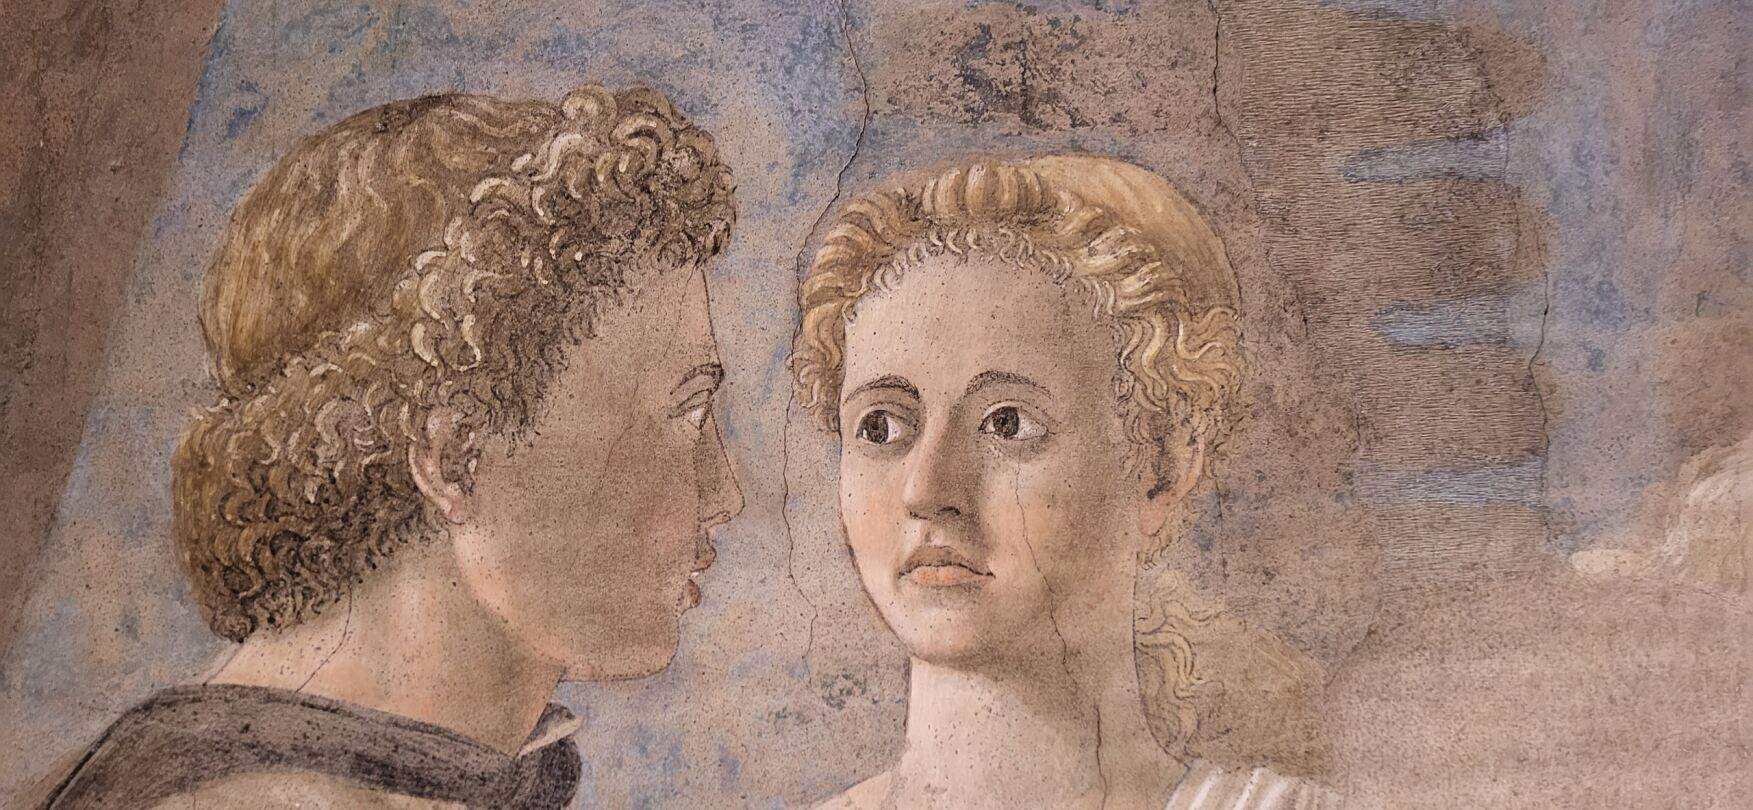 Arezzo, work on Piero della Francesca's Legend of the True Cross completed.